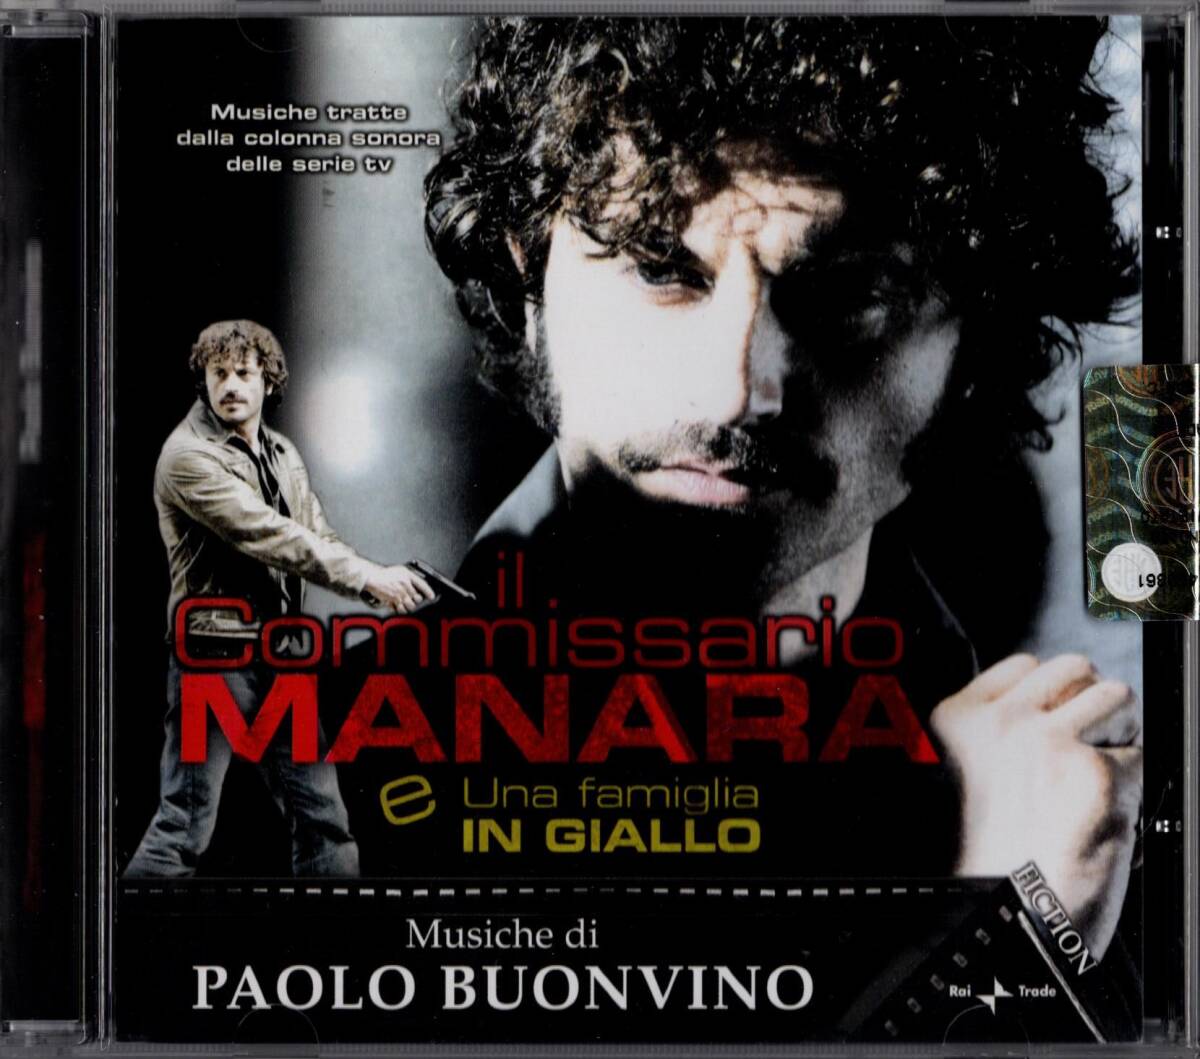 【CD】パオロ・ブォンヴィーノ「IL COMMISSARIO MANARA / UNA FAMIGLIA IN GIALLO」2008年発売・イタリア盤サントラ＊PAOLO BUONVINOの画像1